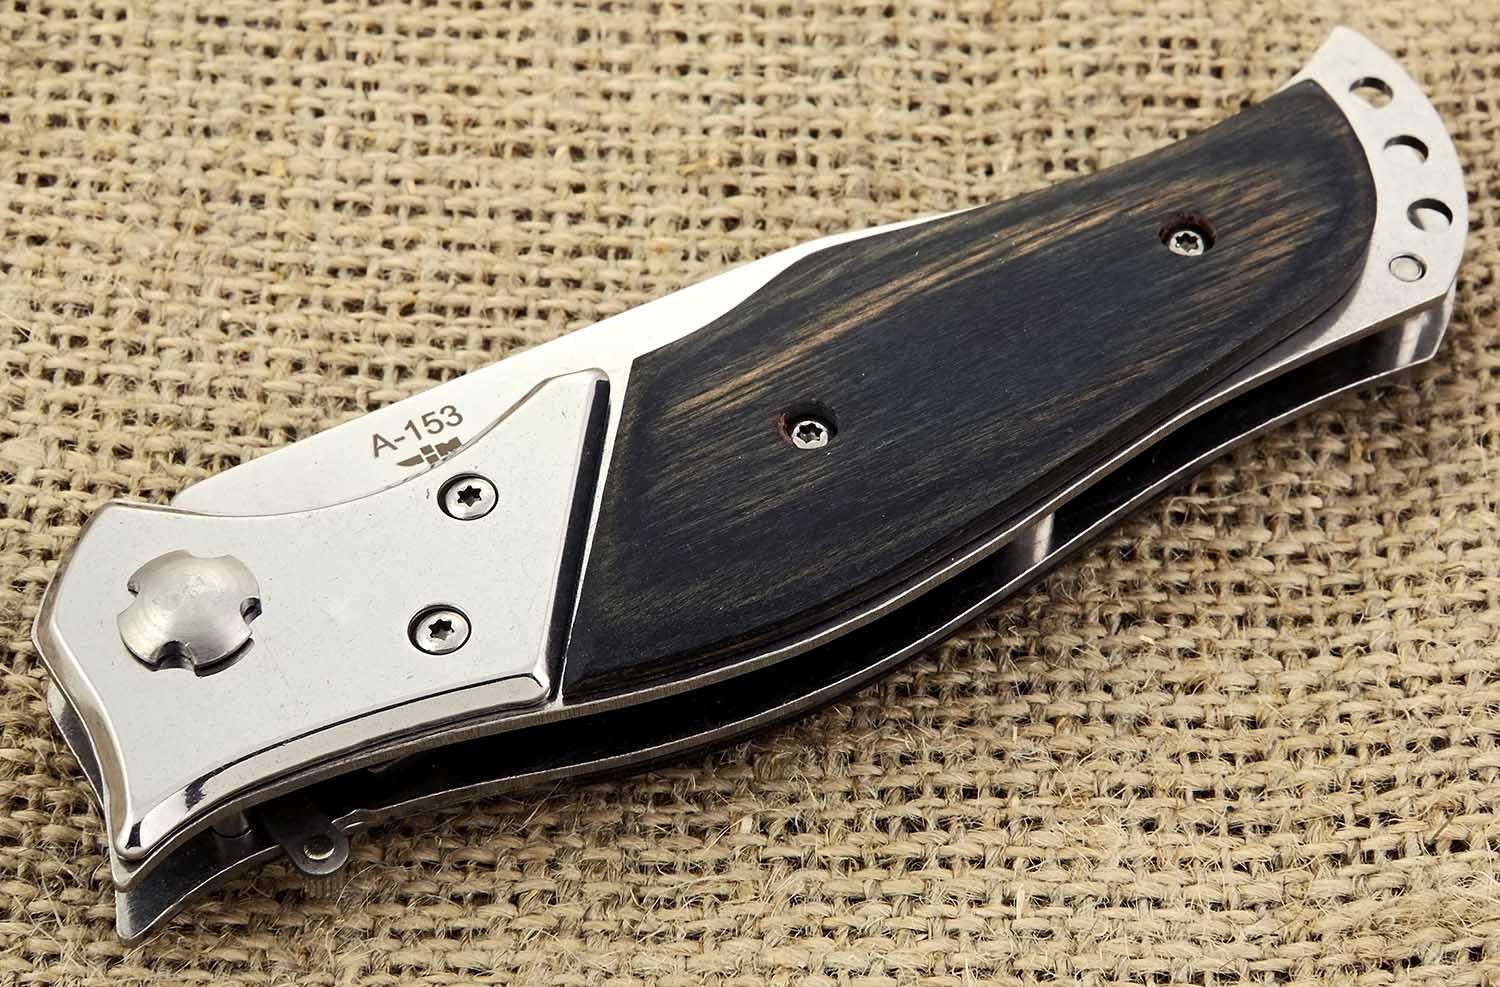 Нож автоматический выкидной Хариус, A-153 от Ножиков